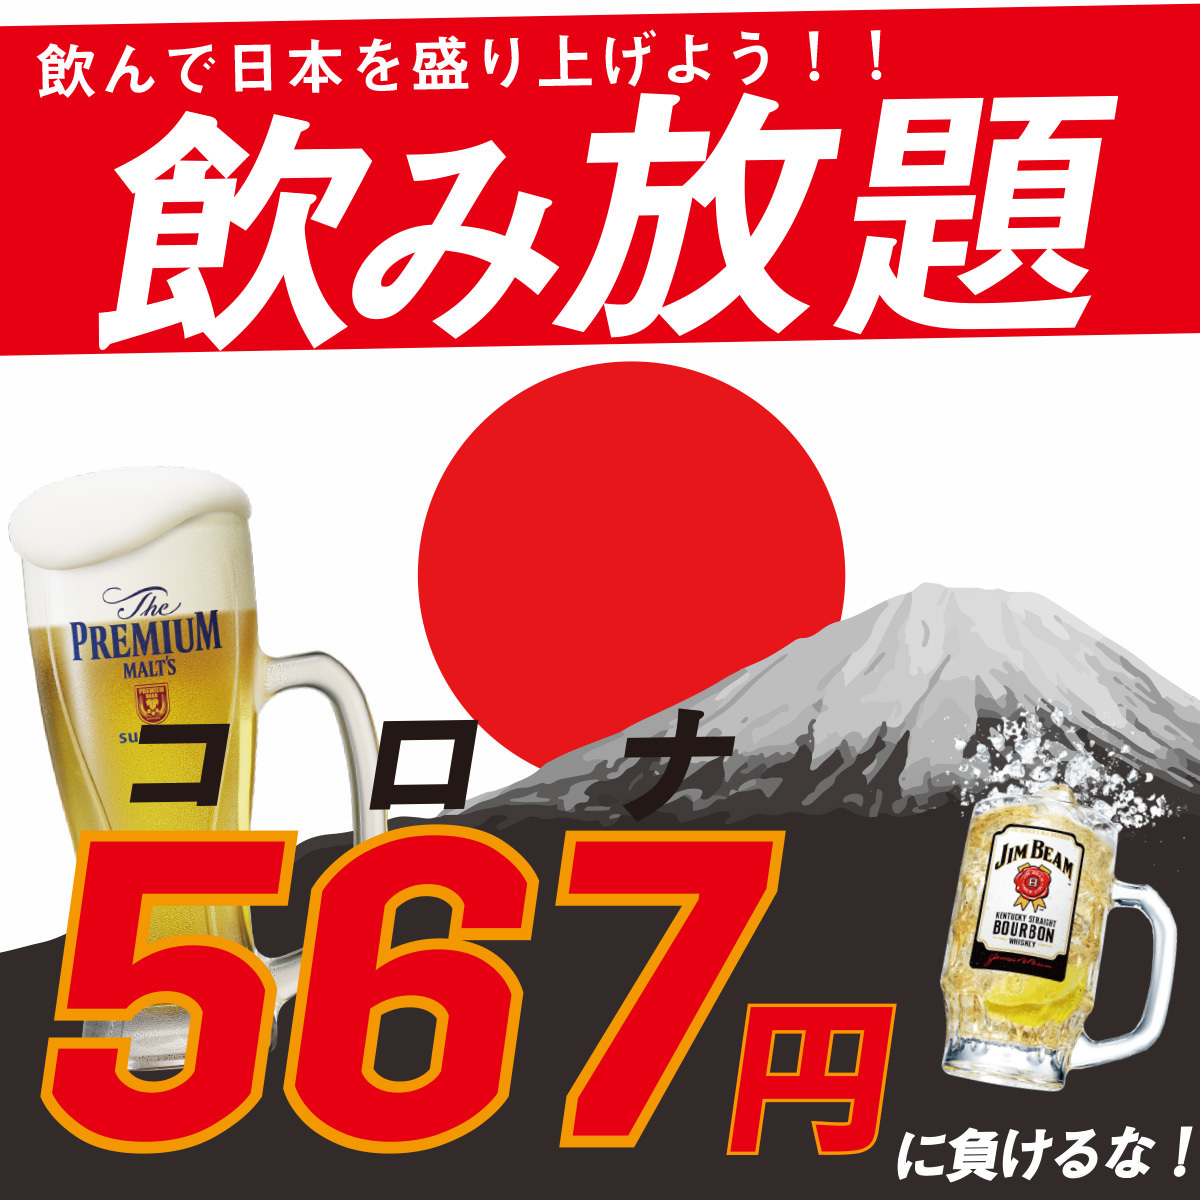 清水湧く千葉県酒々井　
酒伝説の町の日本酒「心機一転」が全国展開！
すべての人の“これから“を応援！